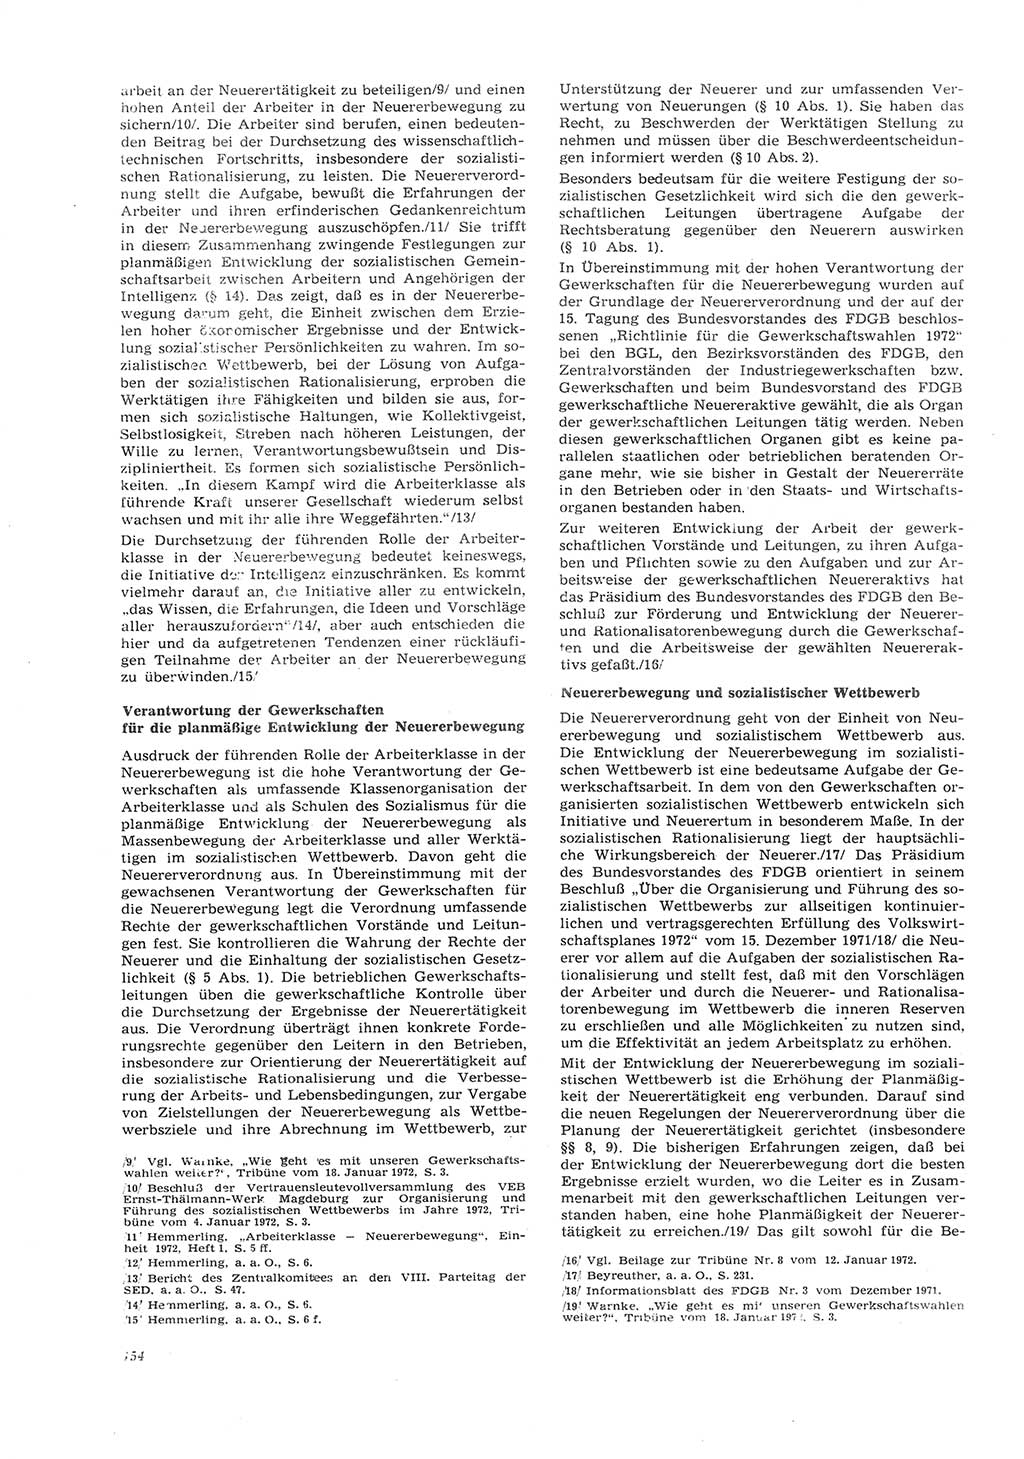 Neue Justiz (NJ), Zeitschrift für Recht und Rechtswissenschaft [Deutsche Demokratische Republik (DDR)], 26. Jahrgang 1972, Seite 154 (NJ DDR 1972, S. 154)